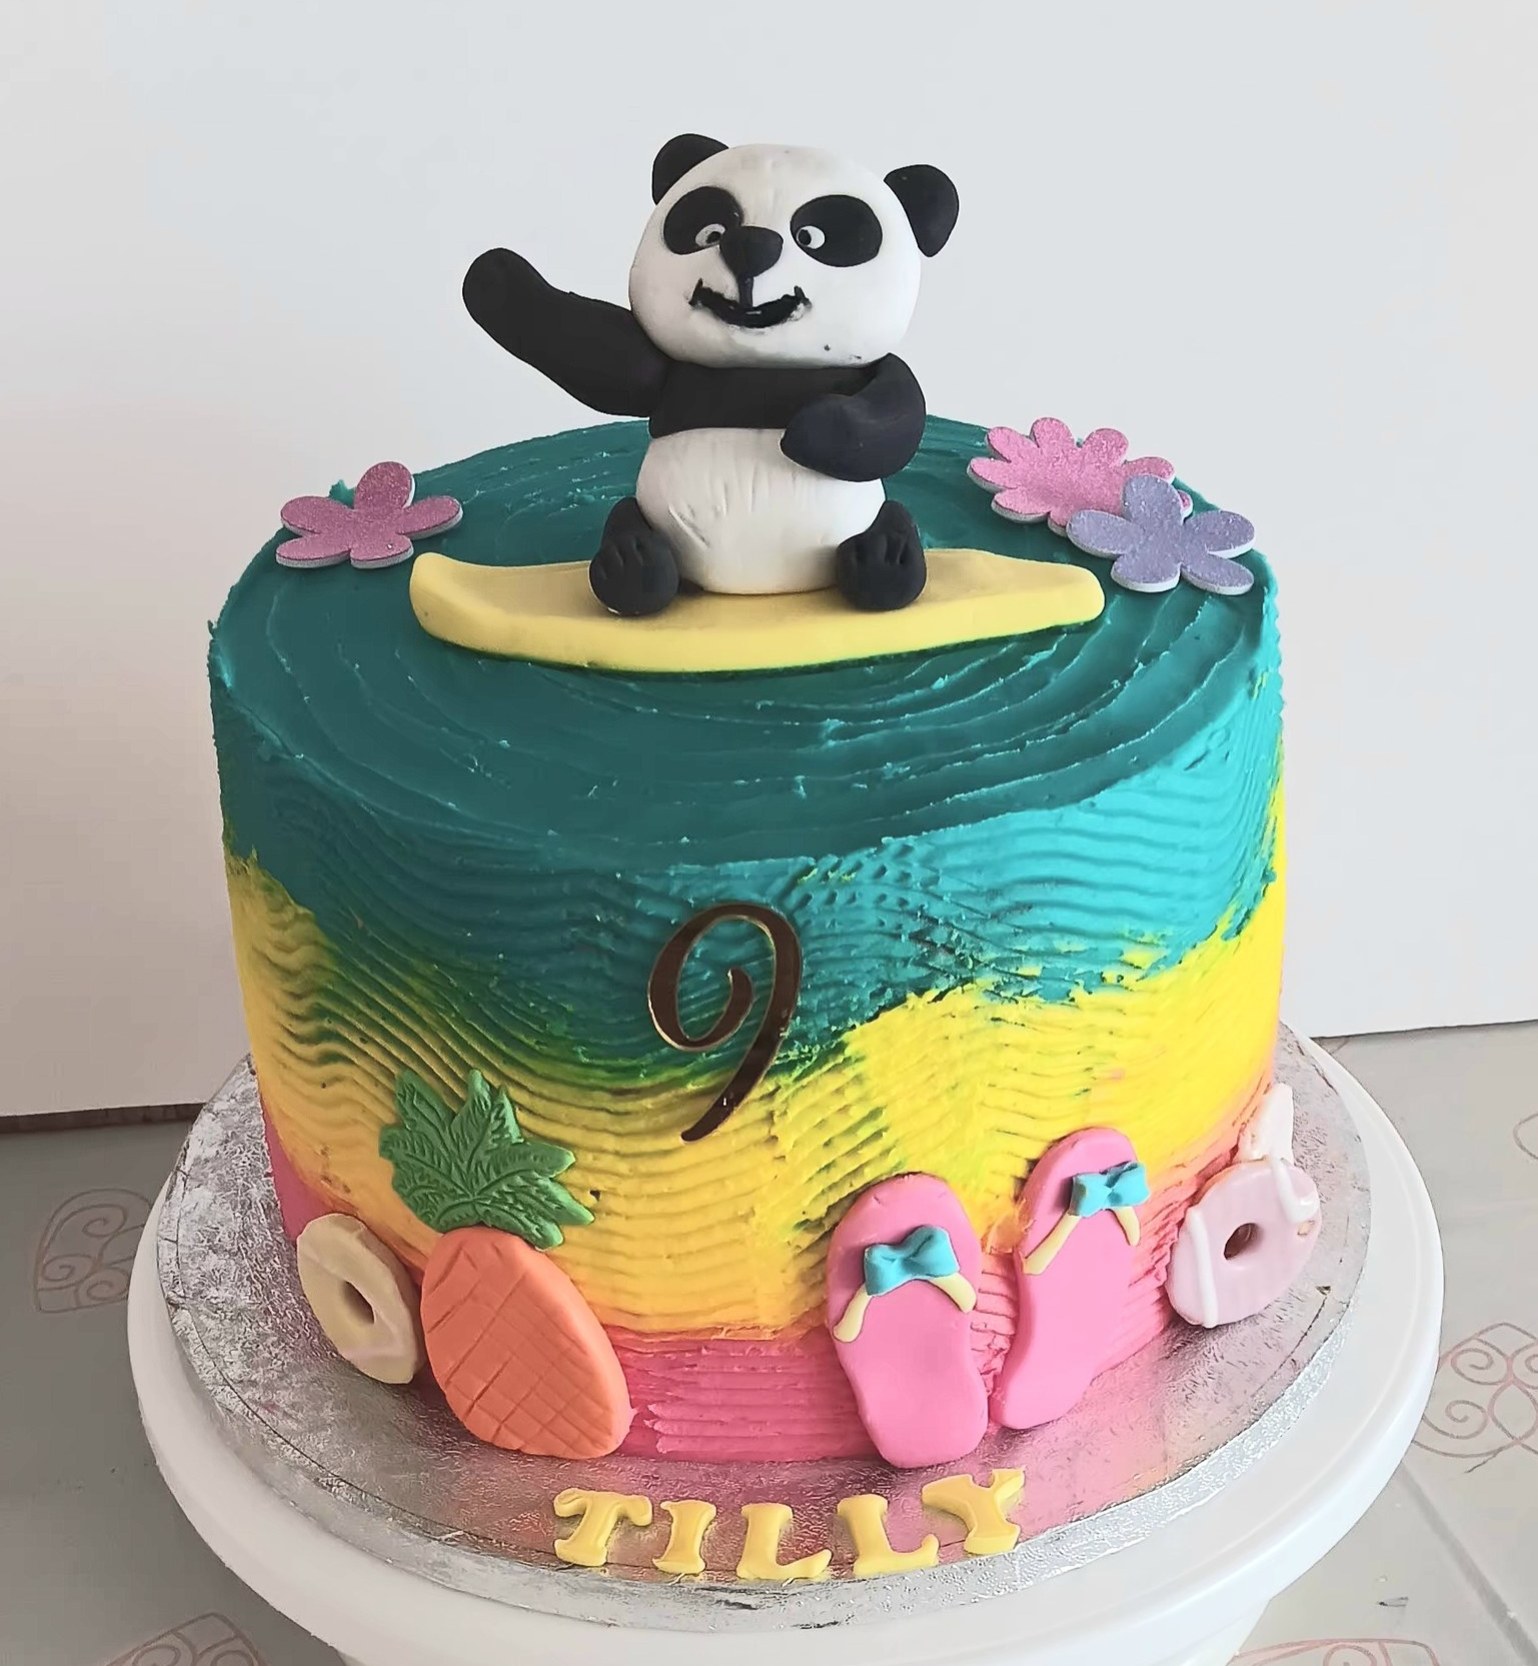 "Surfing panda" pool party cake